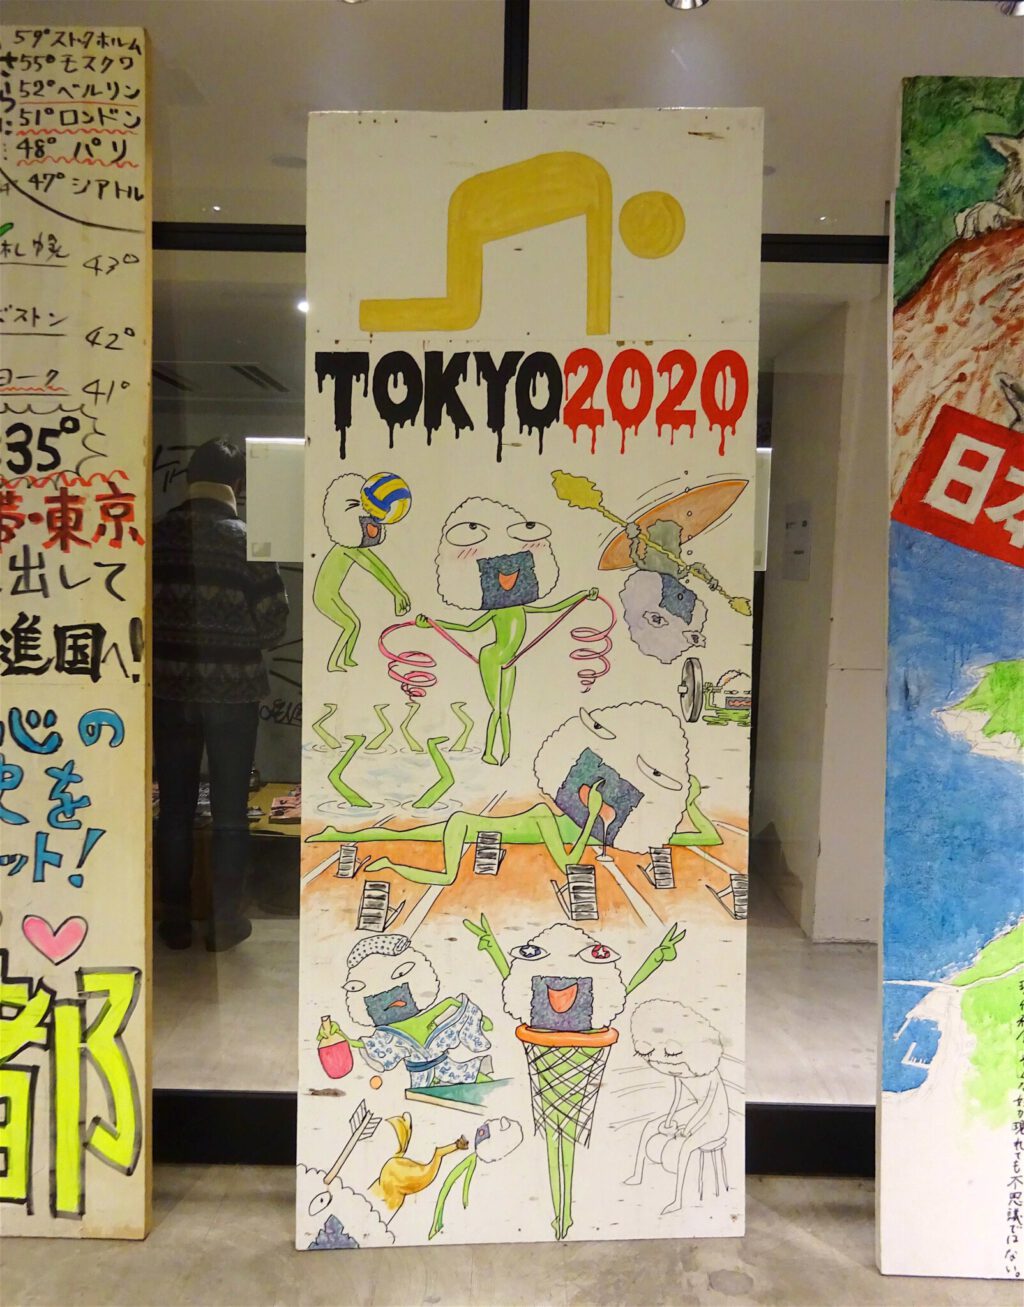 会田誠 AIDA Makoto 「TOKYO 2020」タテカン standing signboard (2018?)